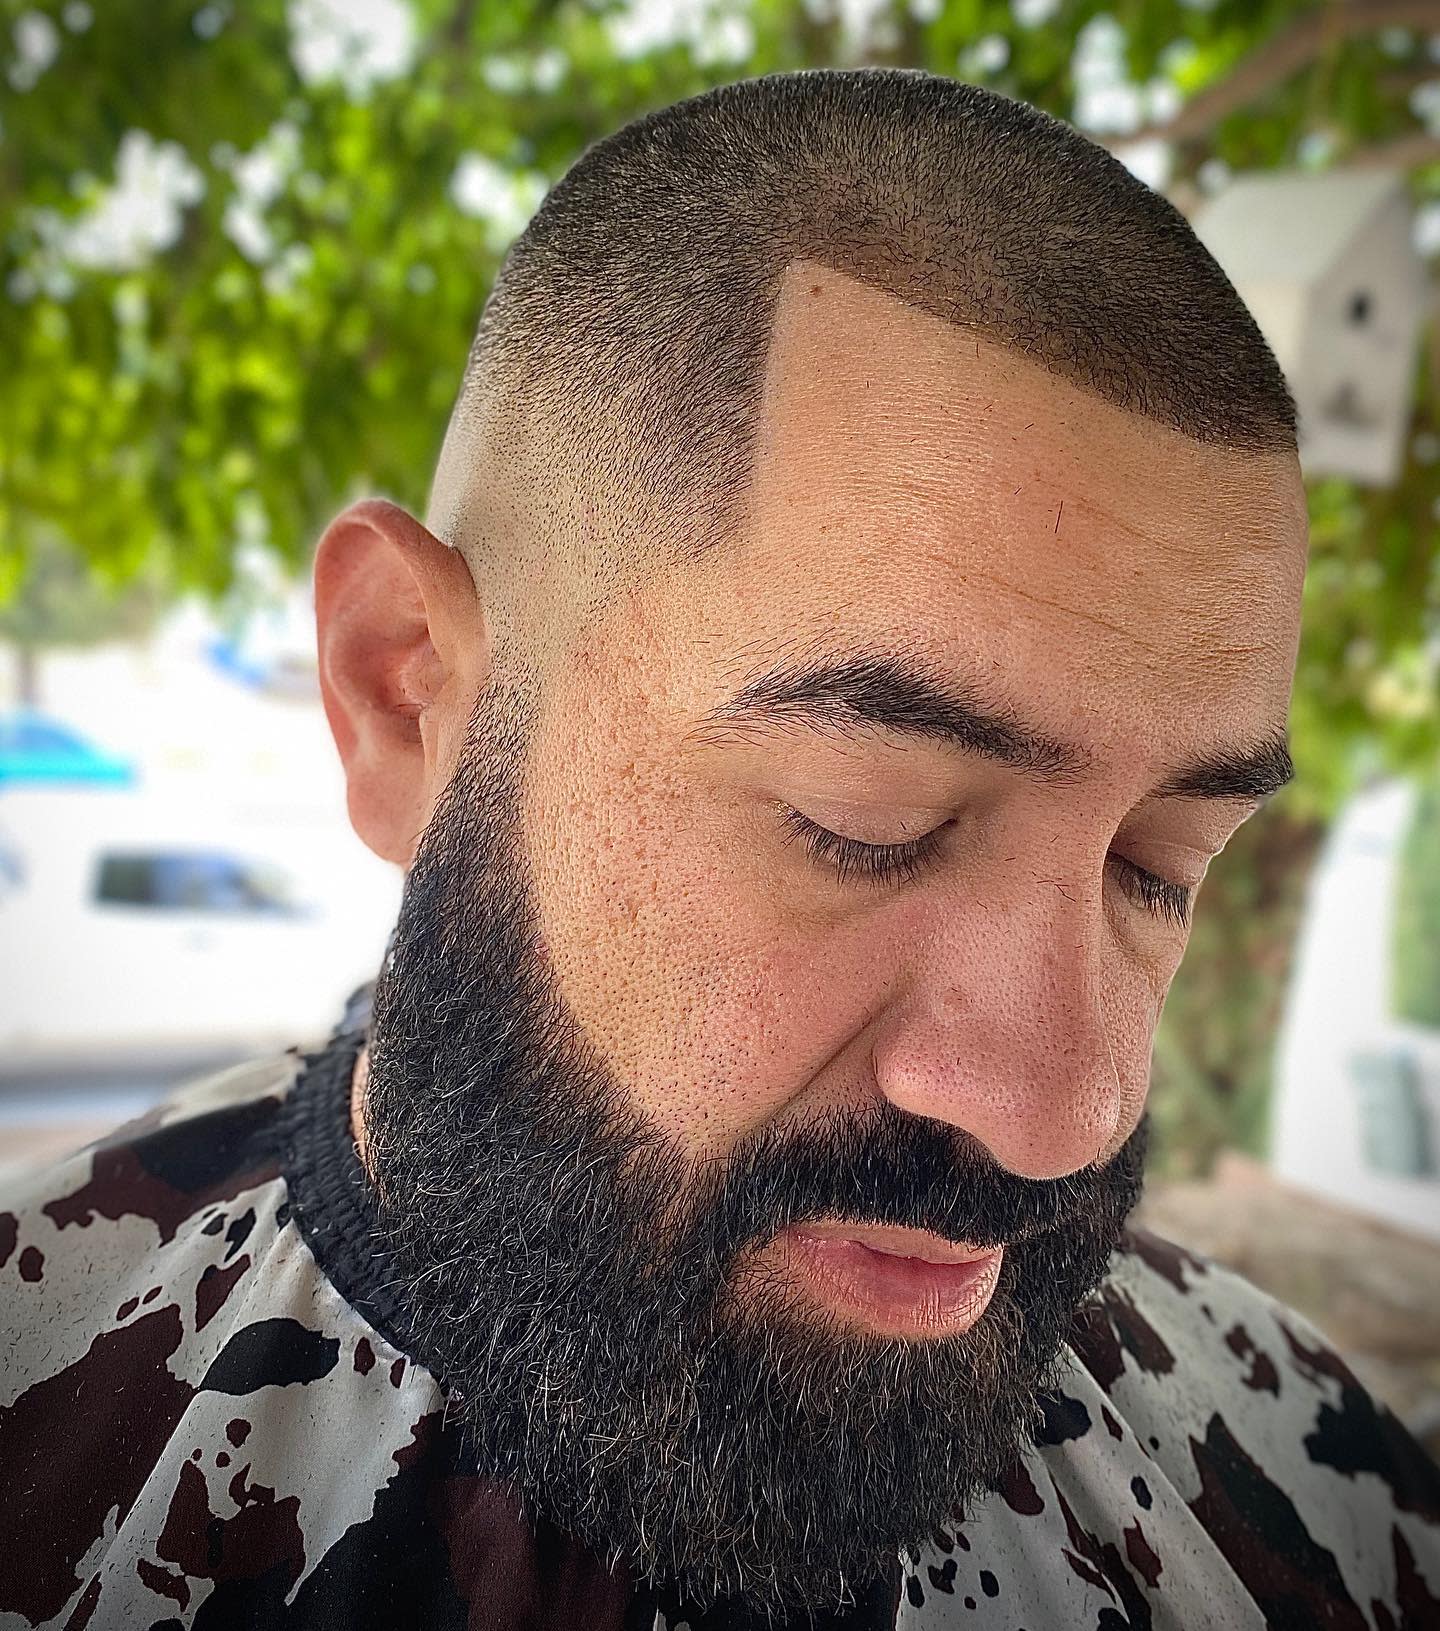 Le rasoir s'estompe avec la barbe